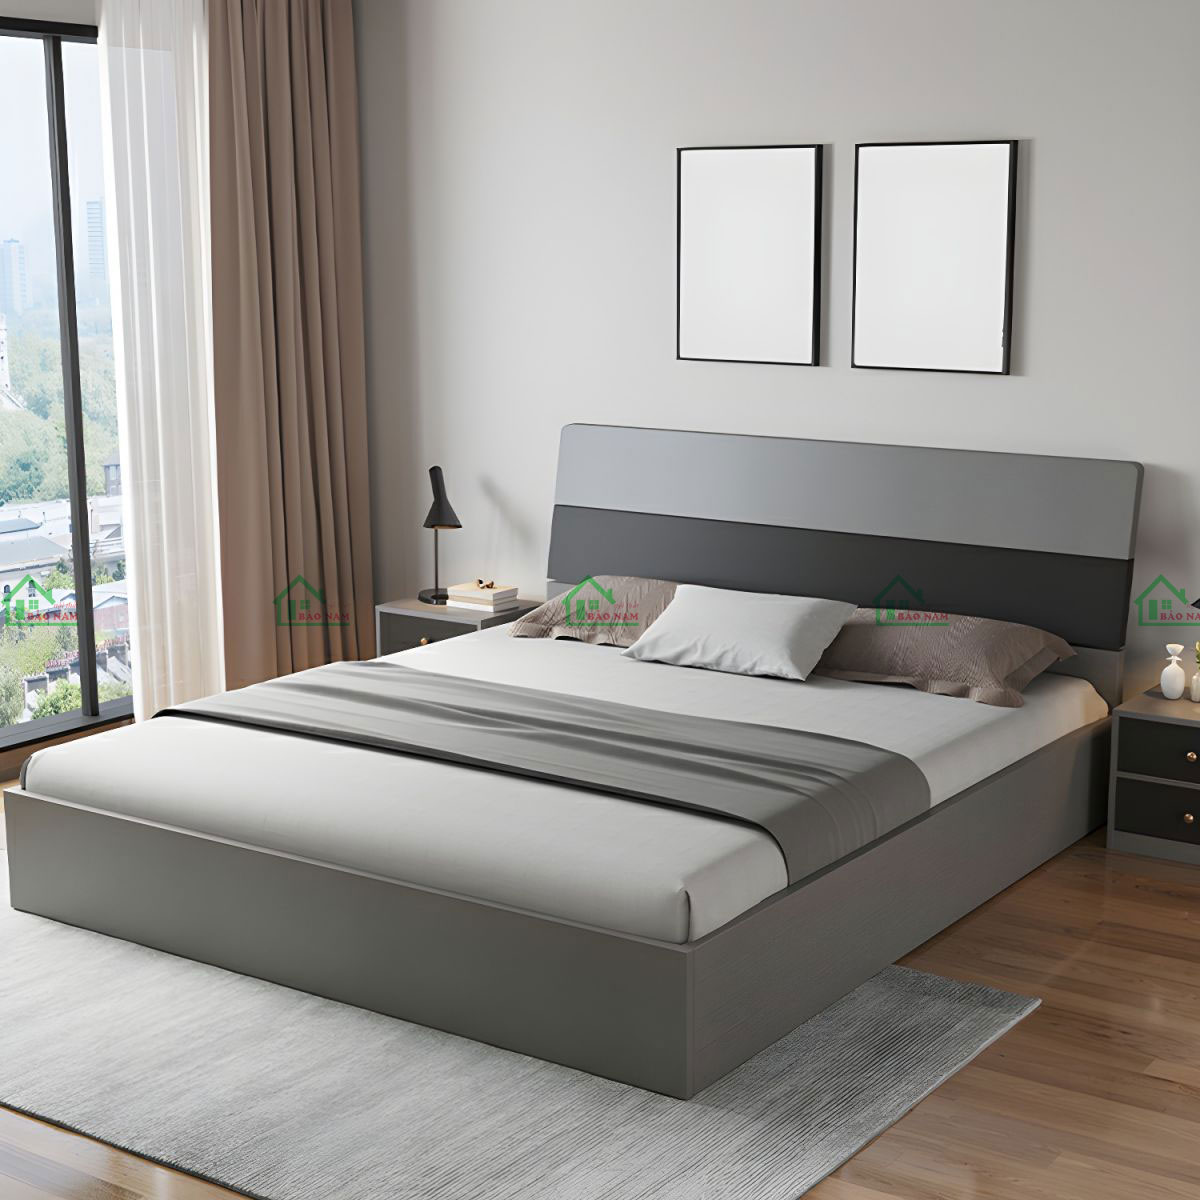 Giường ngủ gỗ MDF màu xám hiện đại